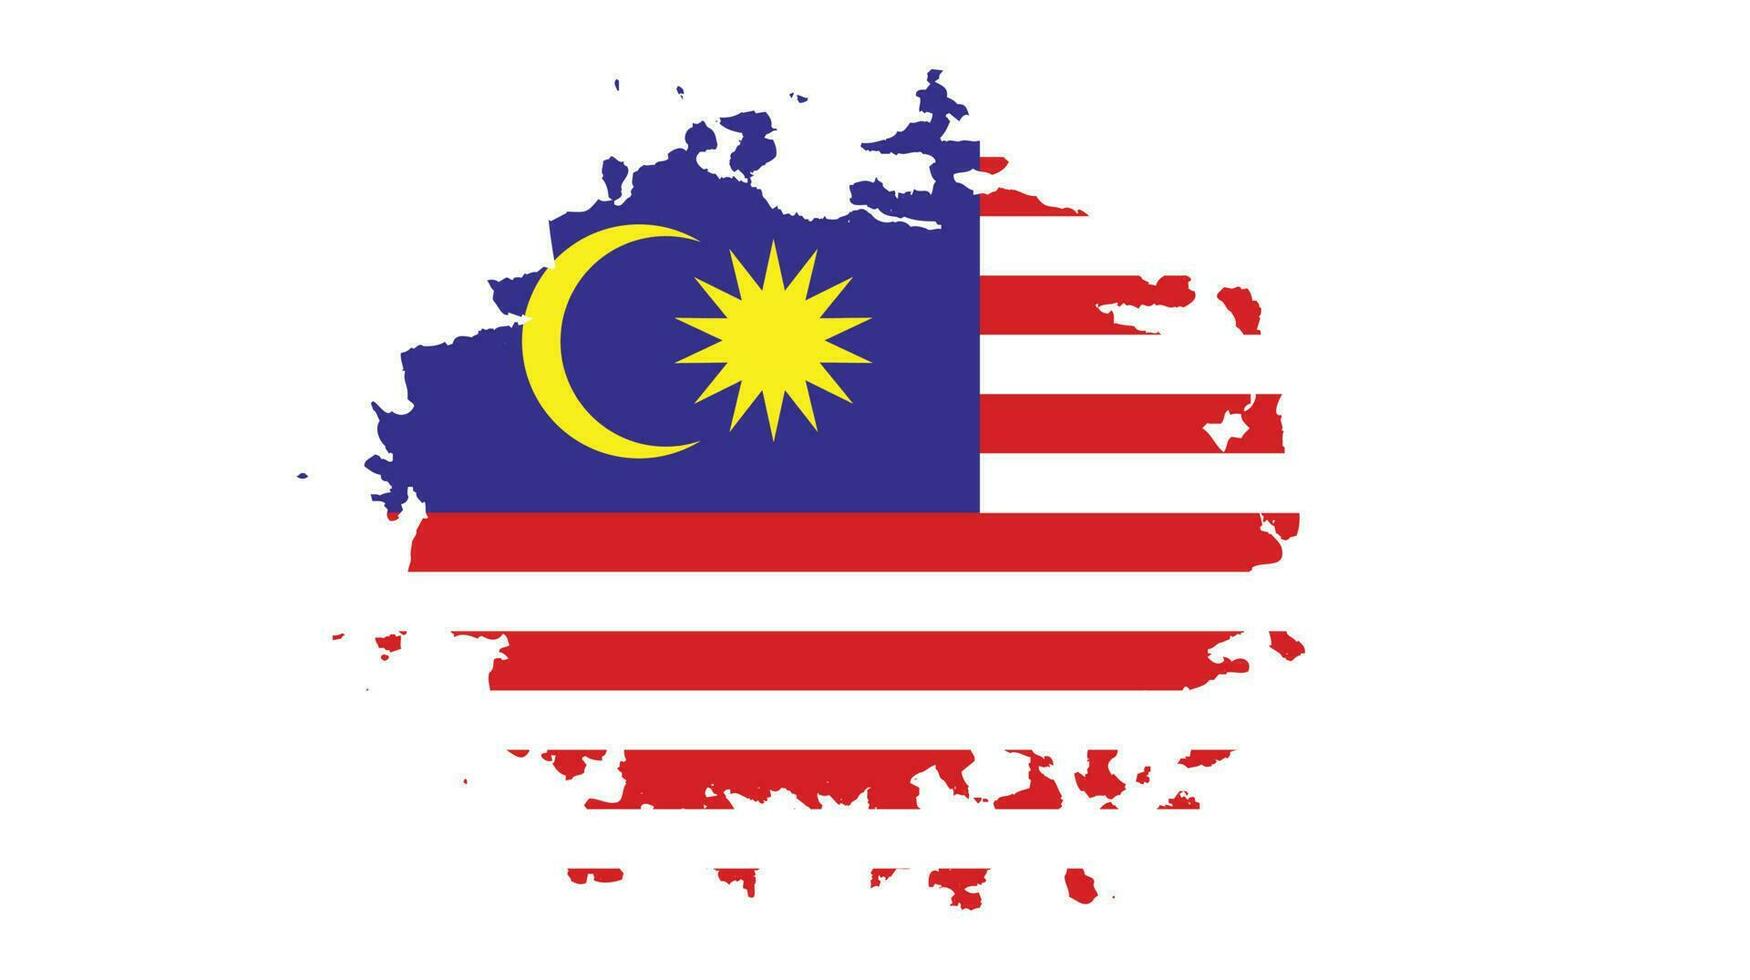 novo vetor de bandeira grunge desbotada da malásia